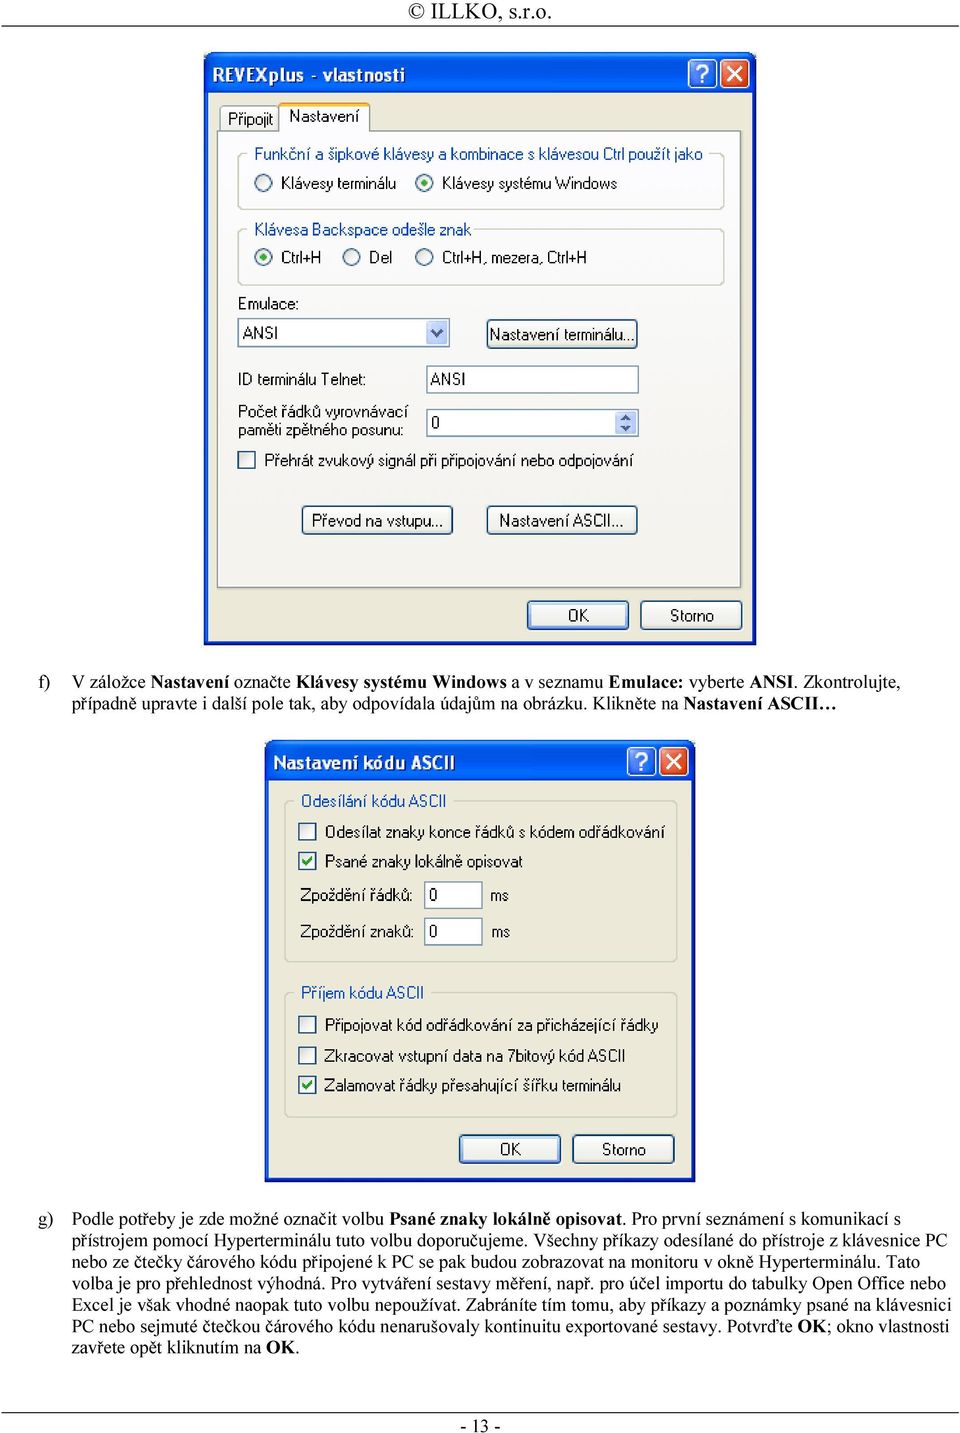 Všechny příkazy odesílané do přístroje z klávesnice PC nebo ze čtečky čárového kódu připojené k PC se pak budou zobrazovat na monitoru v okně Hyperterminálu. Tato volba je pro přehlednost výhodná.